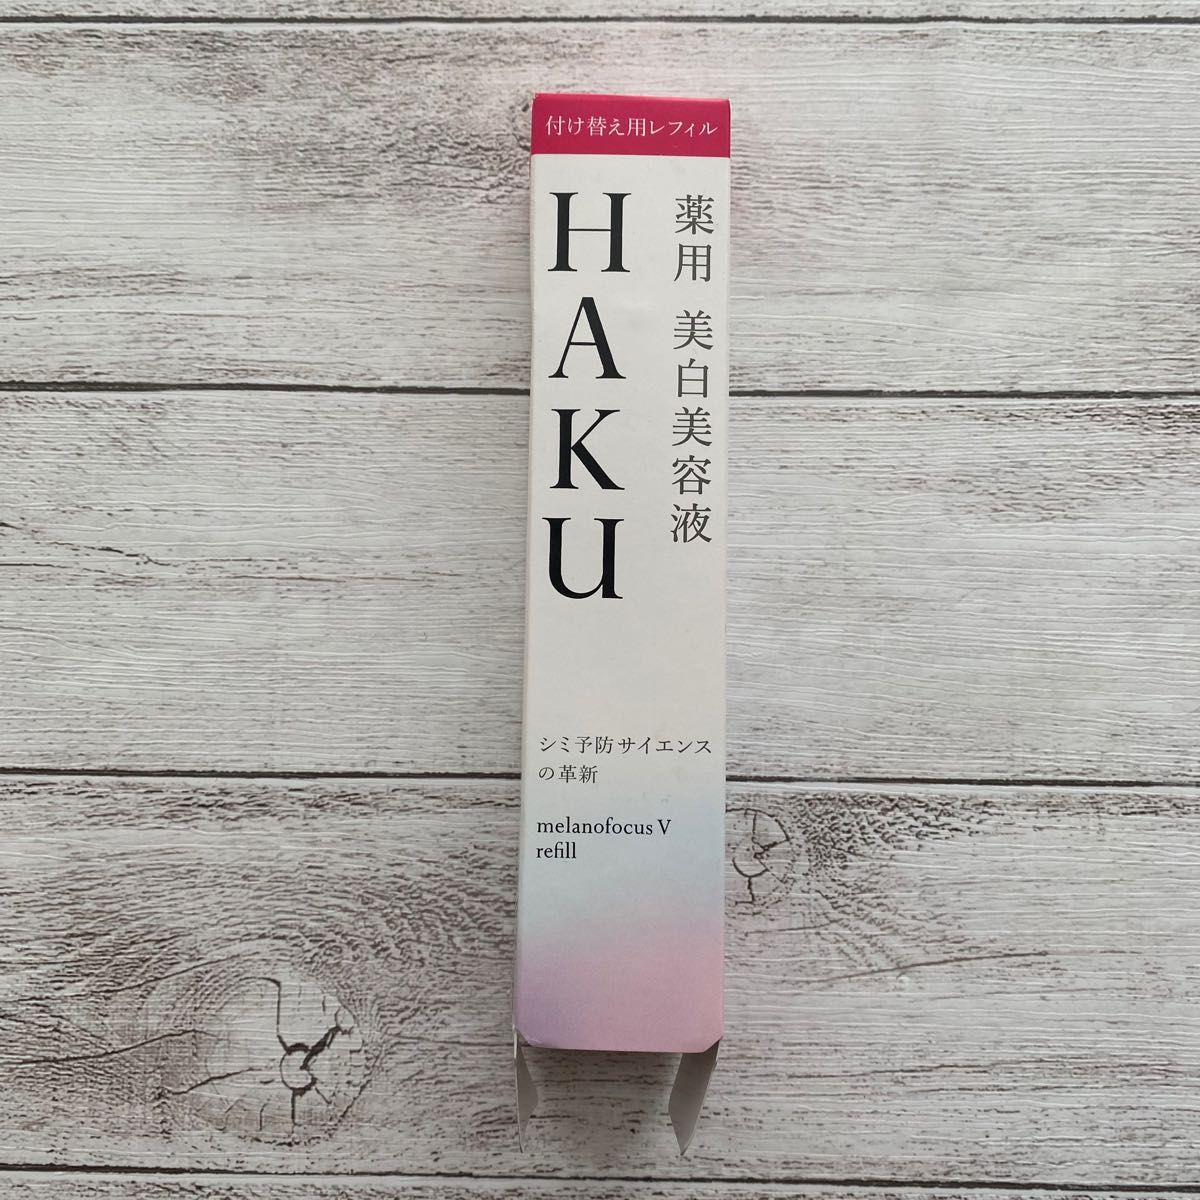 【新品未使用】HAKU メラノフォーカスＶ  45g  レフィル